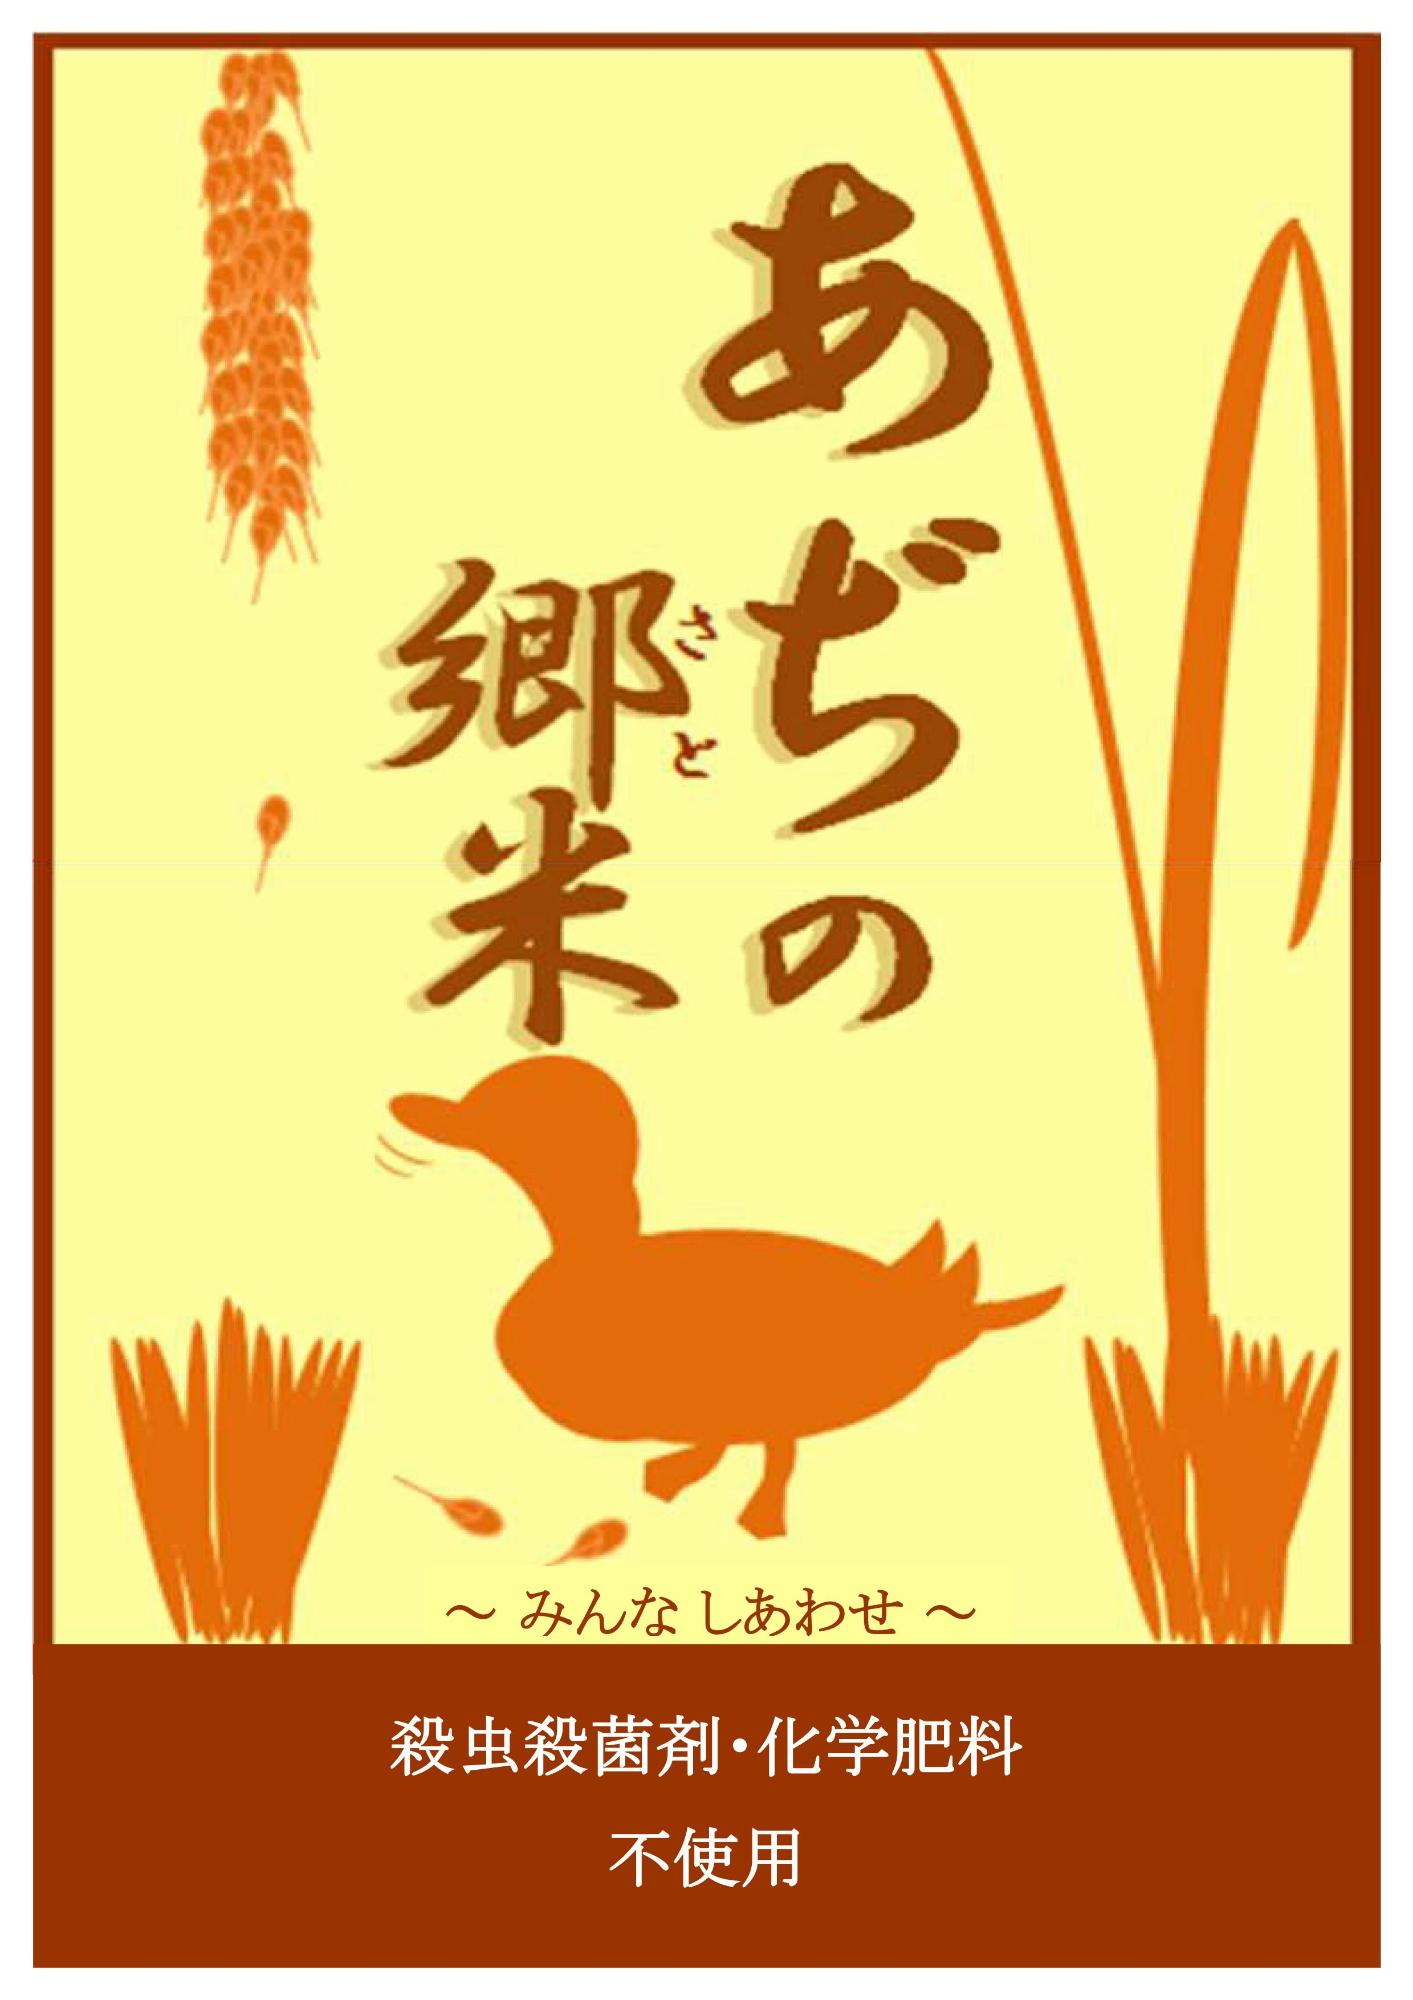 加賀さんコシヒカリあぢの郷米 あぢの郷加賀で生まれた環境にやさしくひときわおいしいお米です